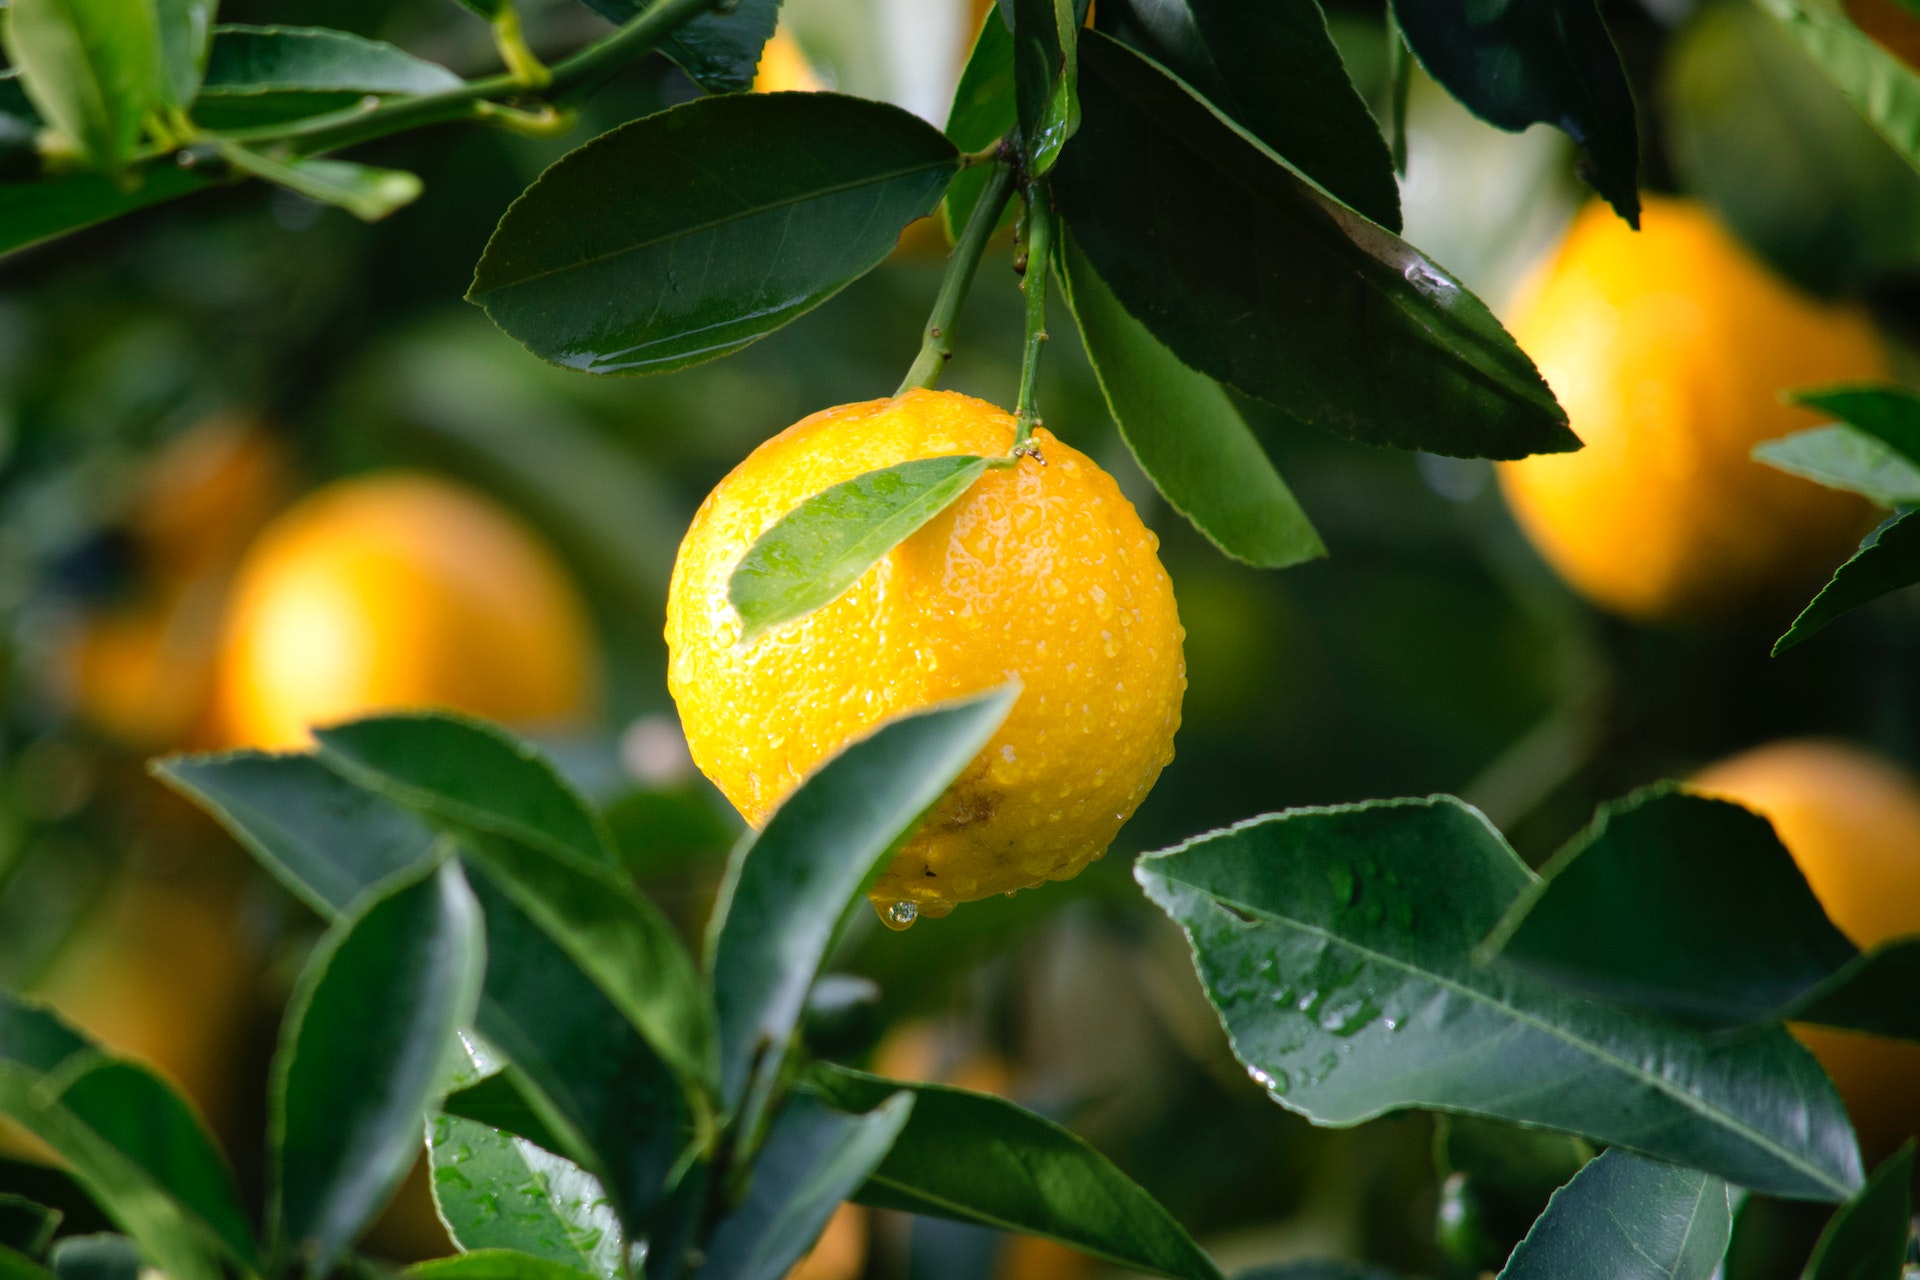 Amazing Household Uses for Lemons